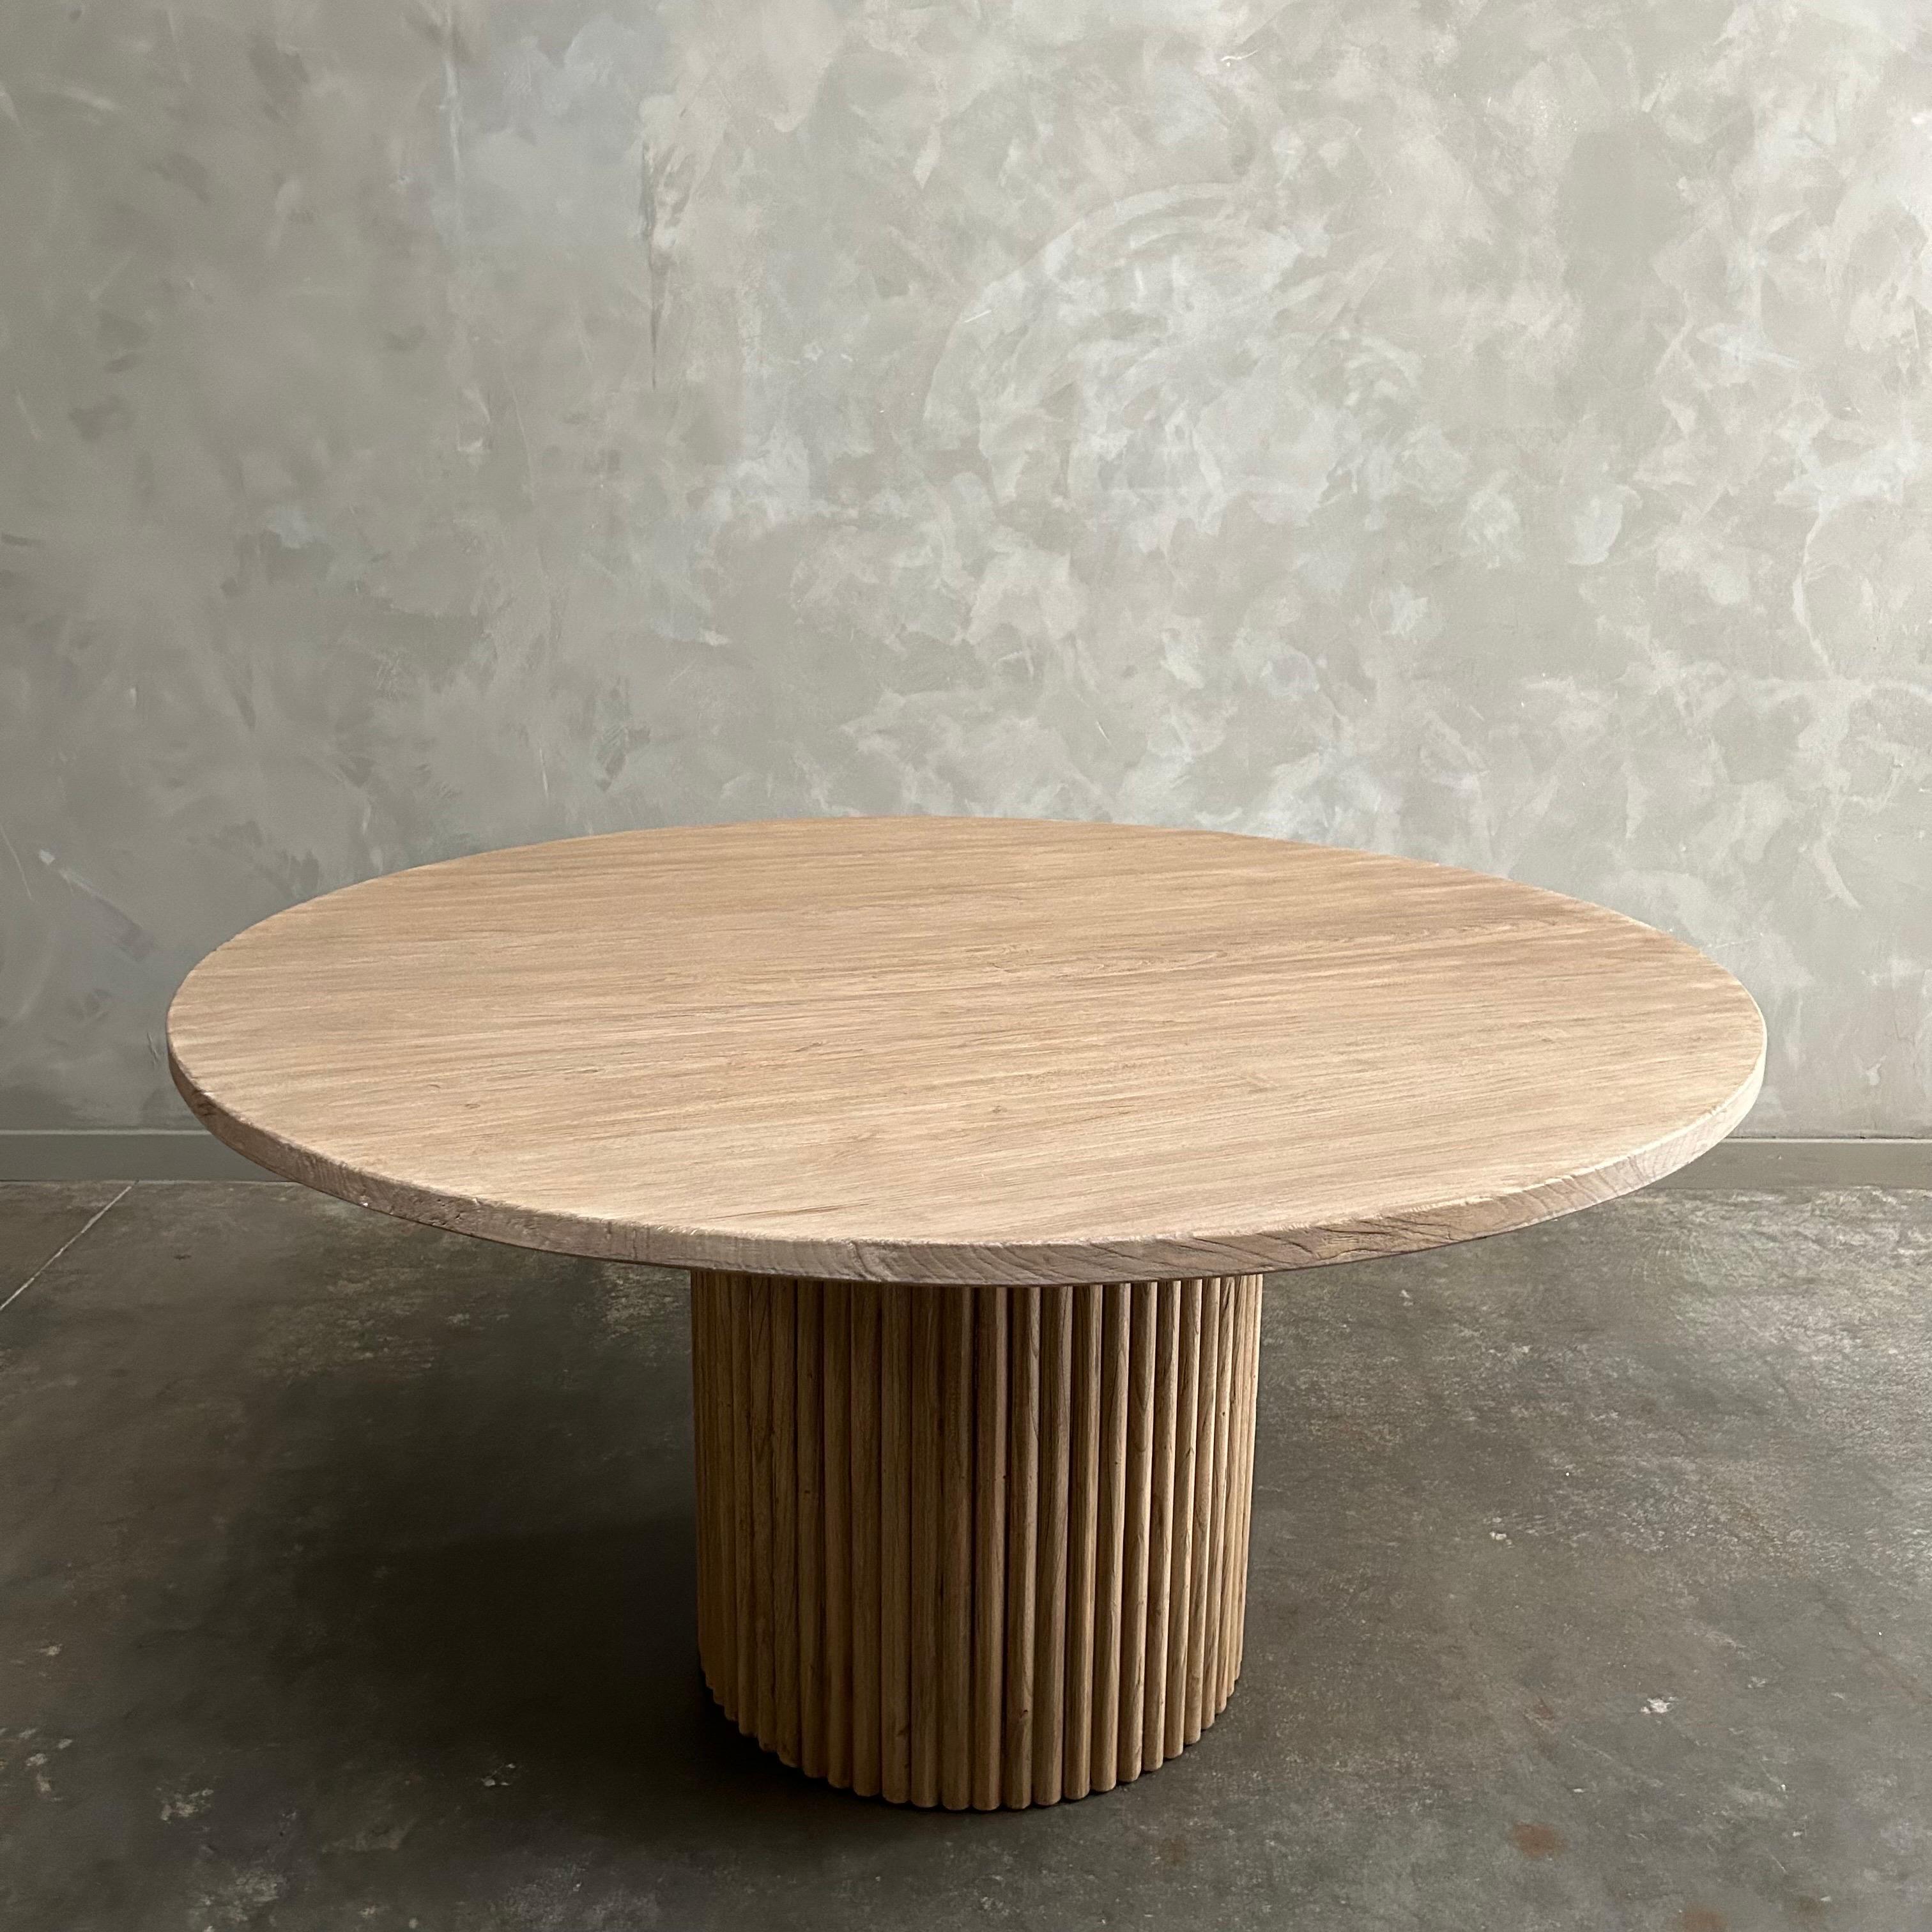 COLLECTION SH
TABLE À MANGER NIKKI
Fabriqué sur mesure à partir de bois d'orme récupéré 
DESCRIPTION :
Avec une base de table à colonnes cannelées, la table de salle à manger Nikki est le rêve d'un minimaliste moderne. Fabriquée en orme massif, la